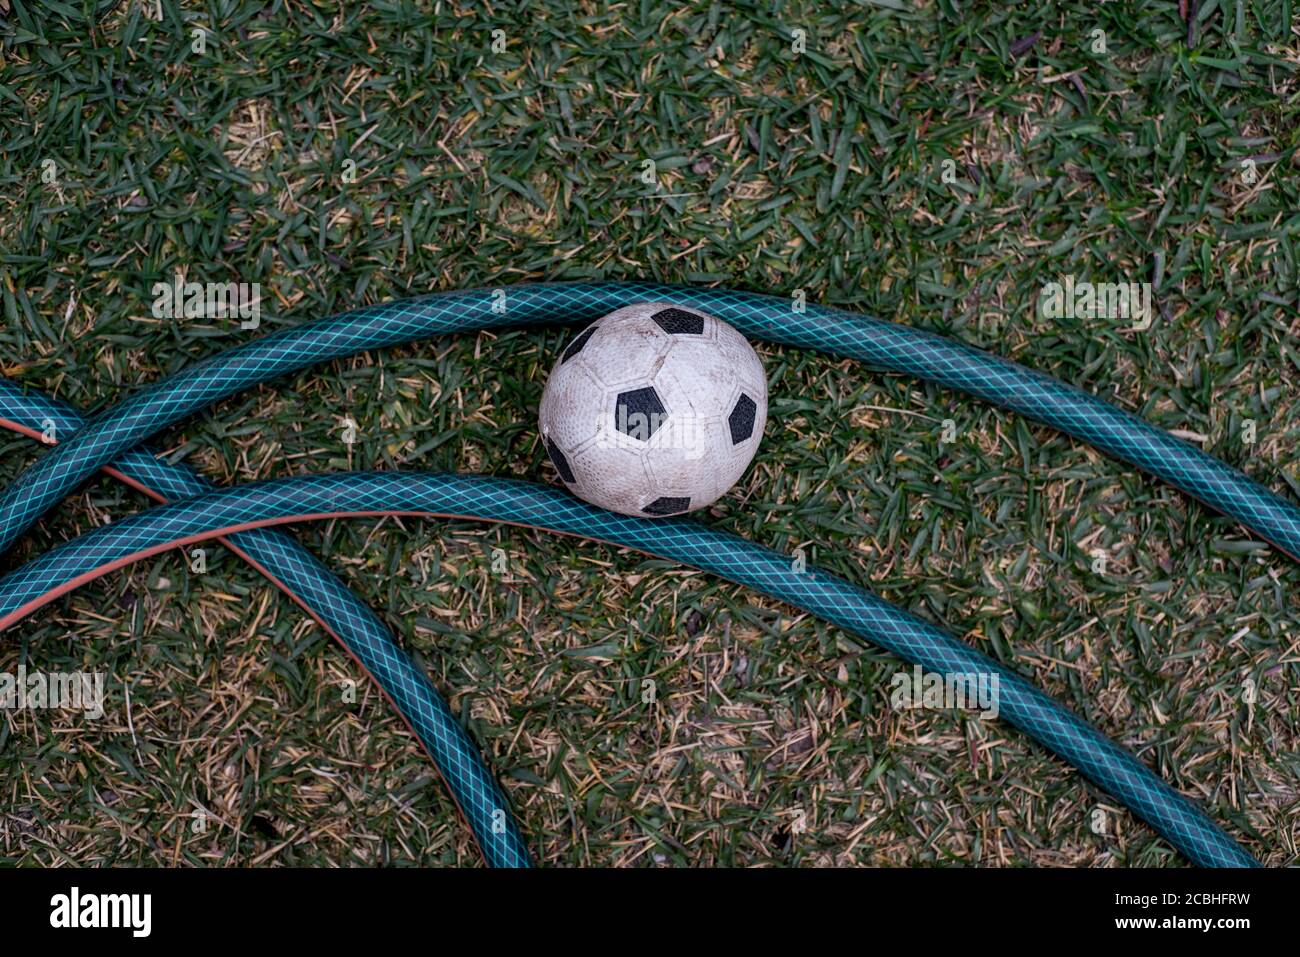 Vue de dessus d'un ballon de football noir et blanc sale à côté d'un tuyau vert dans un jardin formant une forme intéressante. Banque D'Images